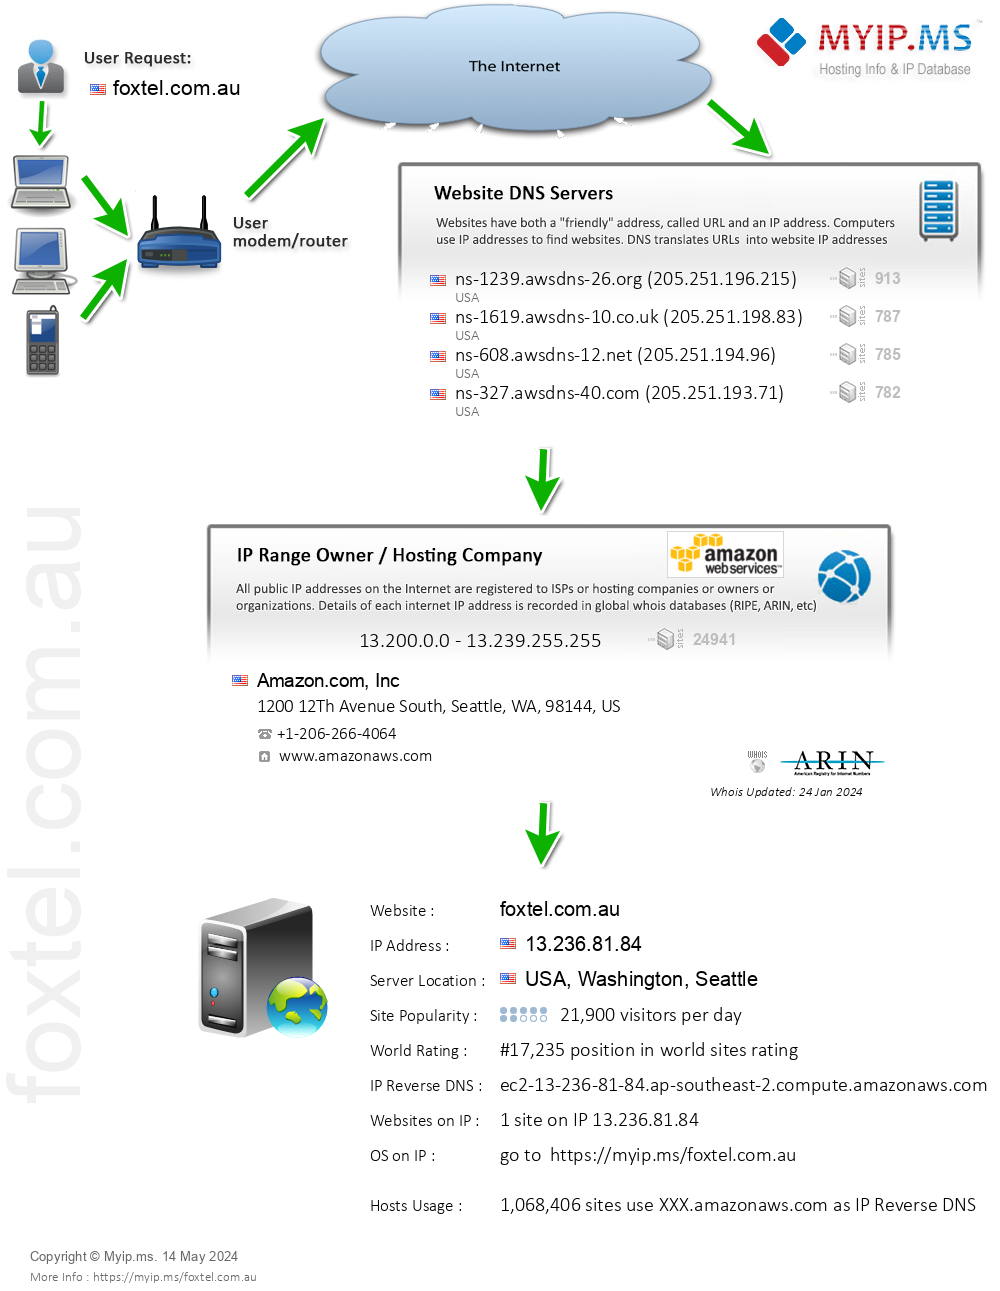 Foxtel.com.au - Website Hosting Visual IP Diagram